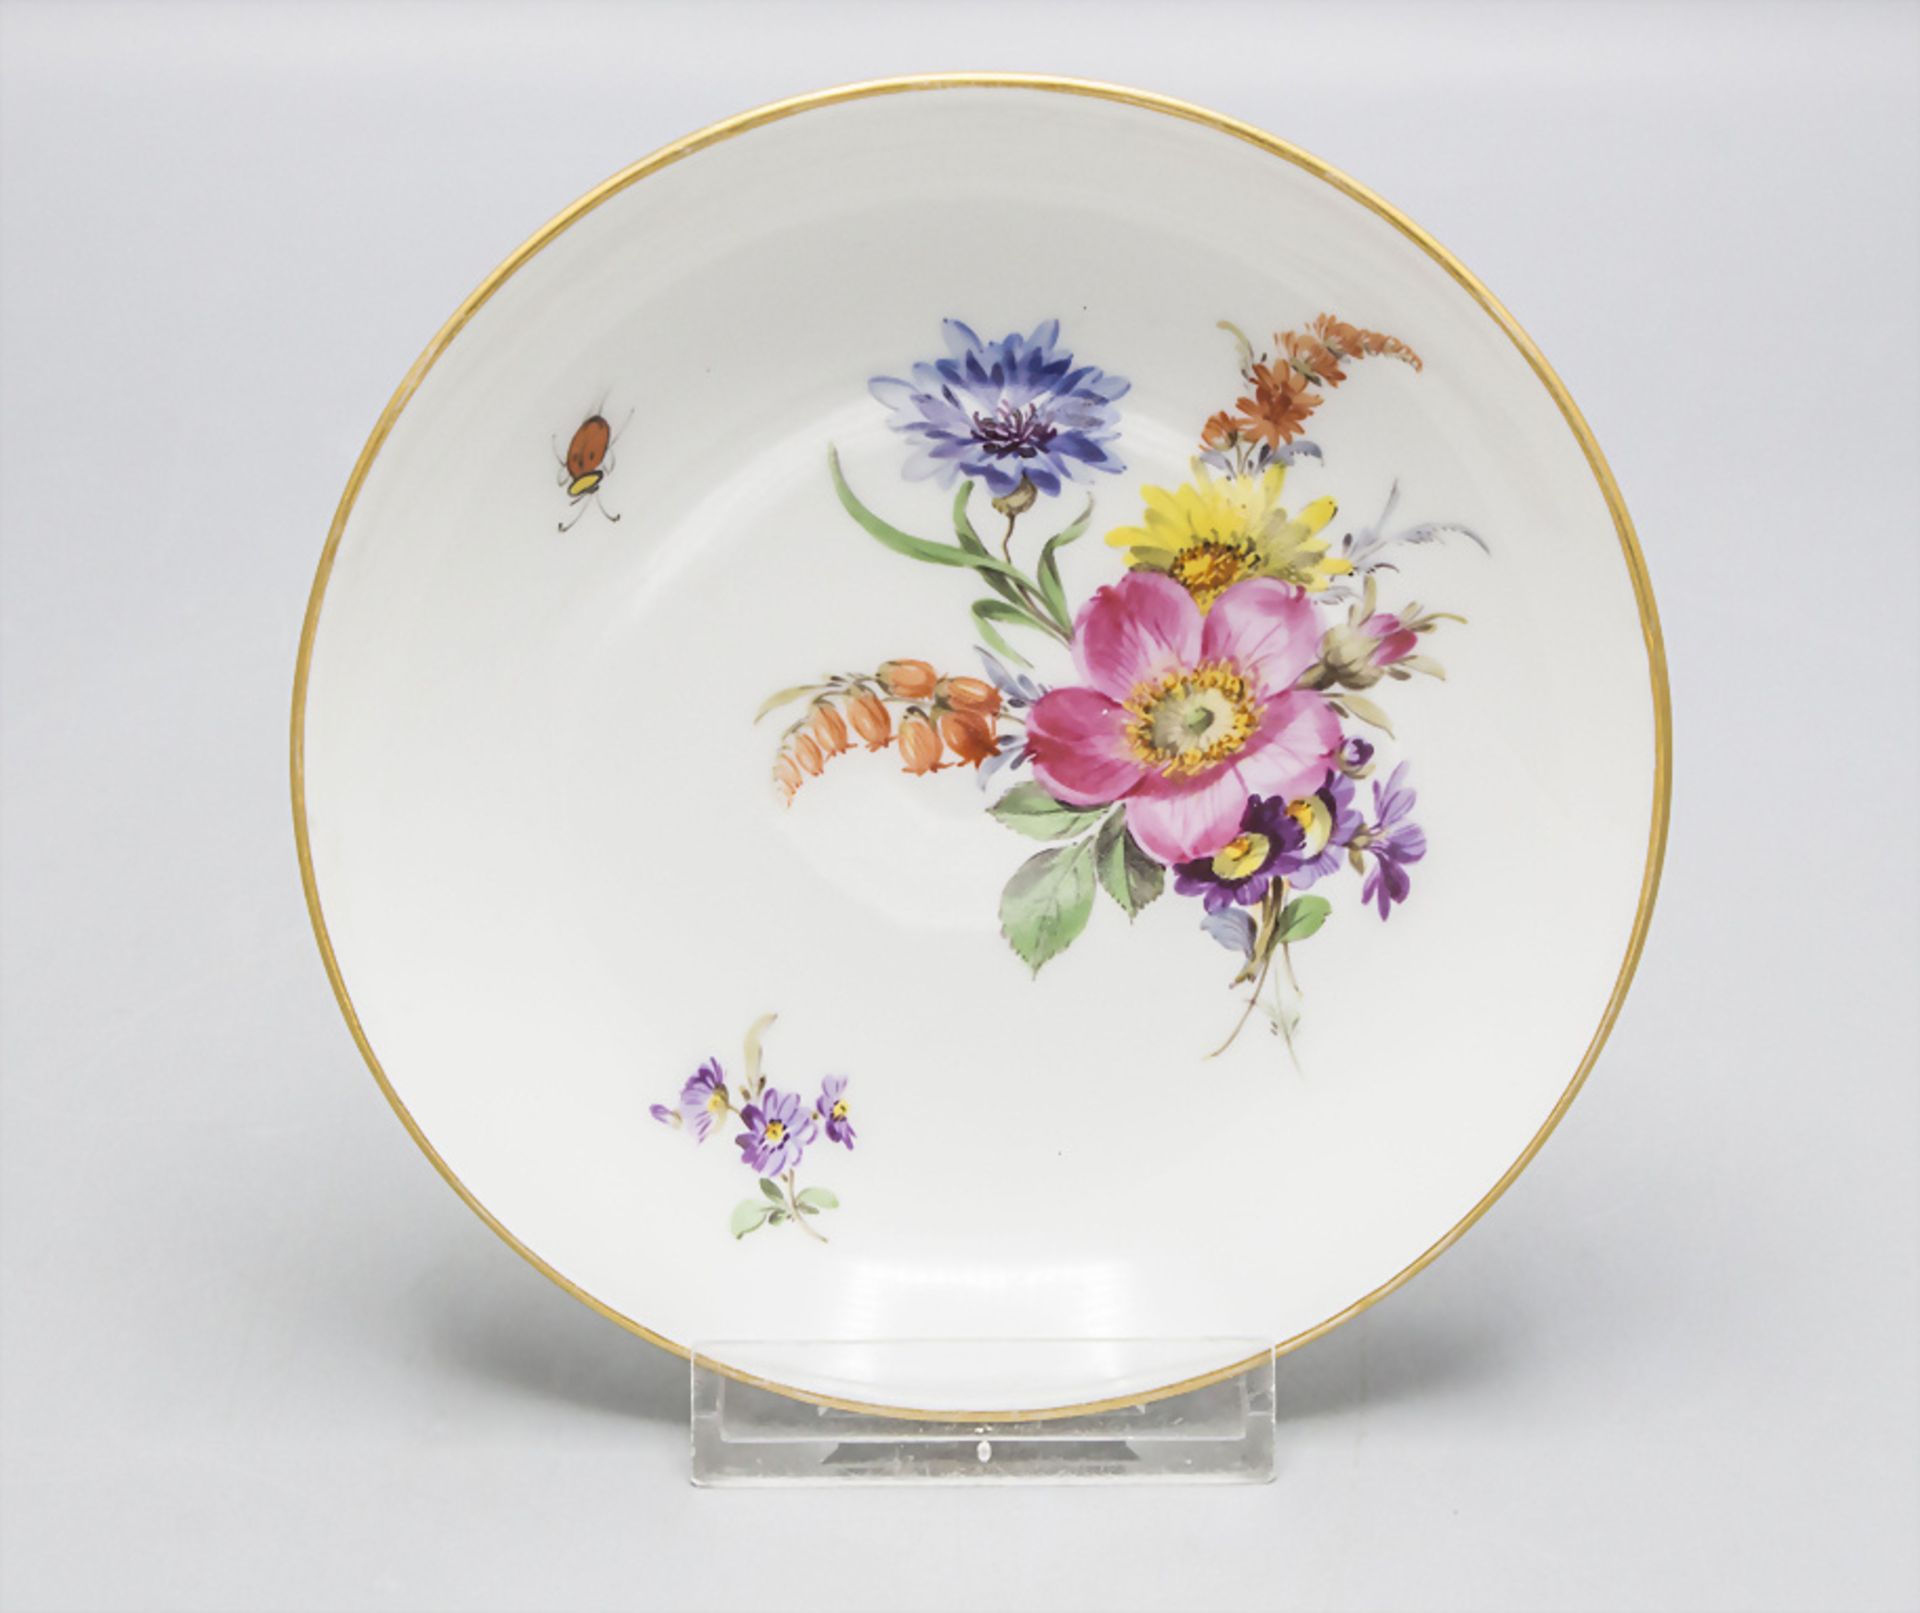 Zierschale mit Blumenbouquet und Insekt / A decorative dish with flowers and a beetle, ...